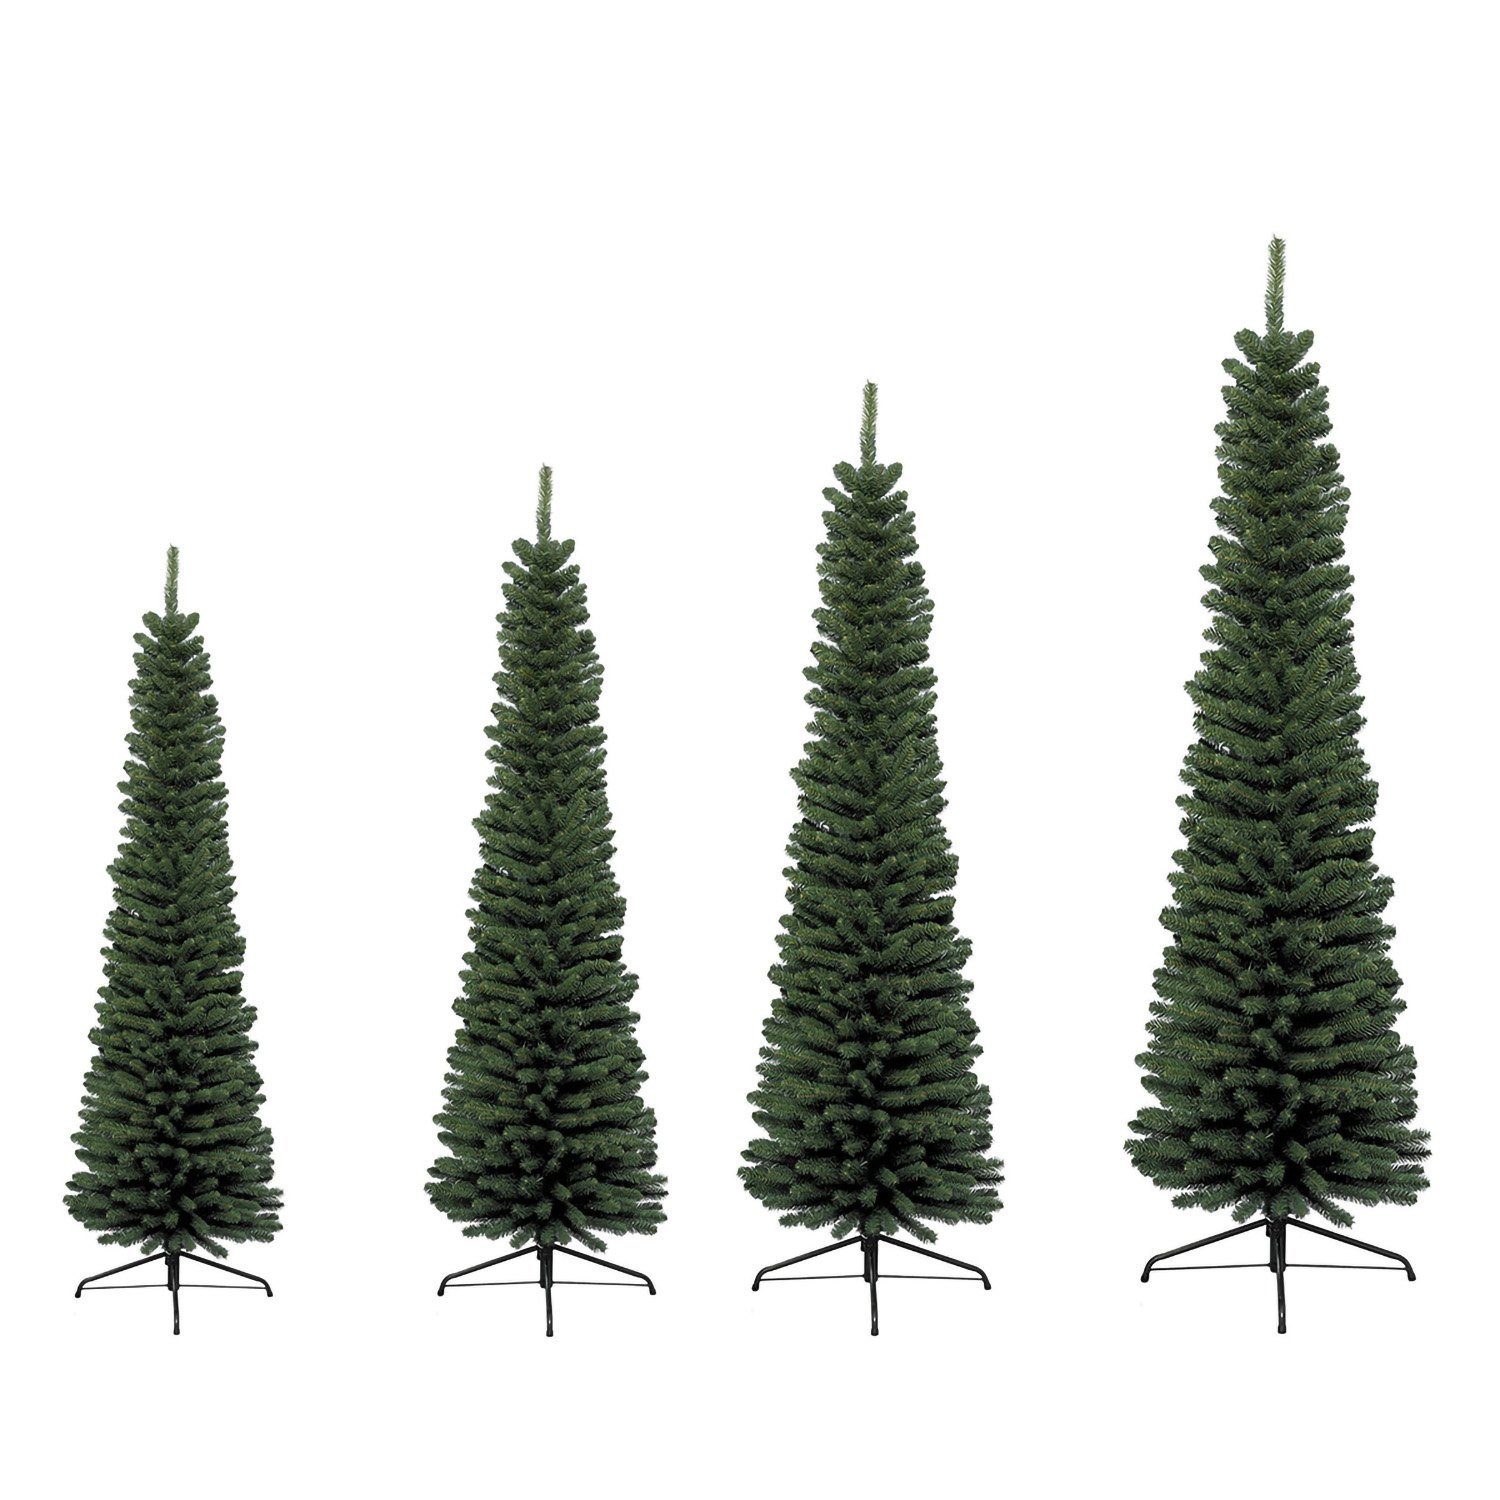 Weihnachtsbaum GILDE - Deko grün 210cm Künstlicher H. GILDE Indoor - Tannenbaum D. x 60cm